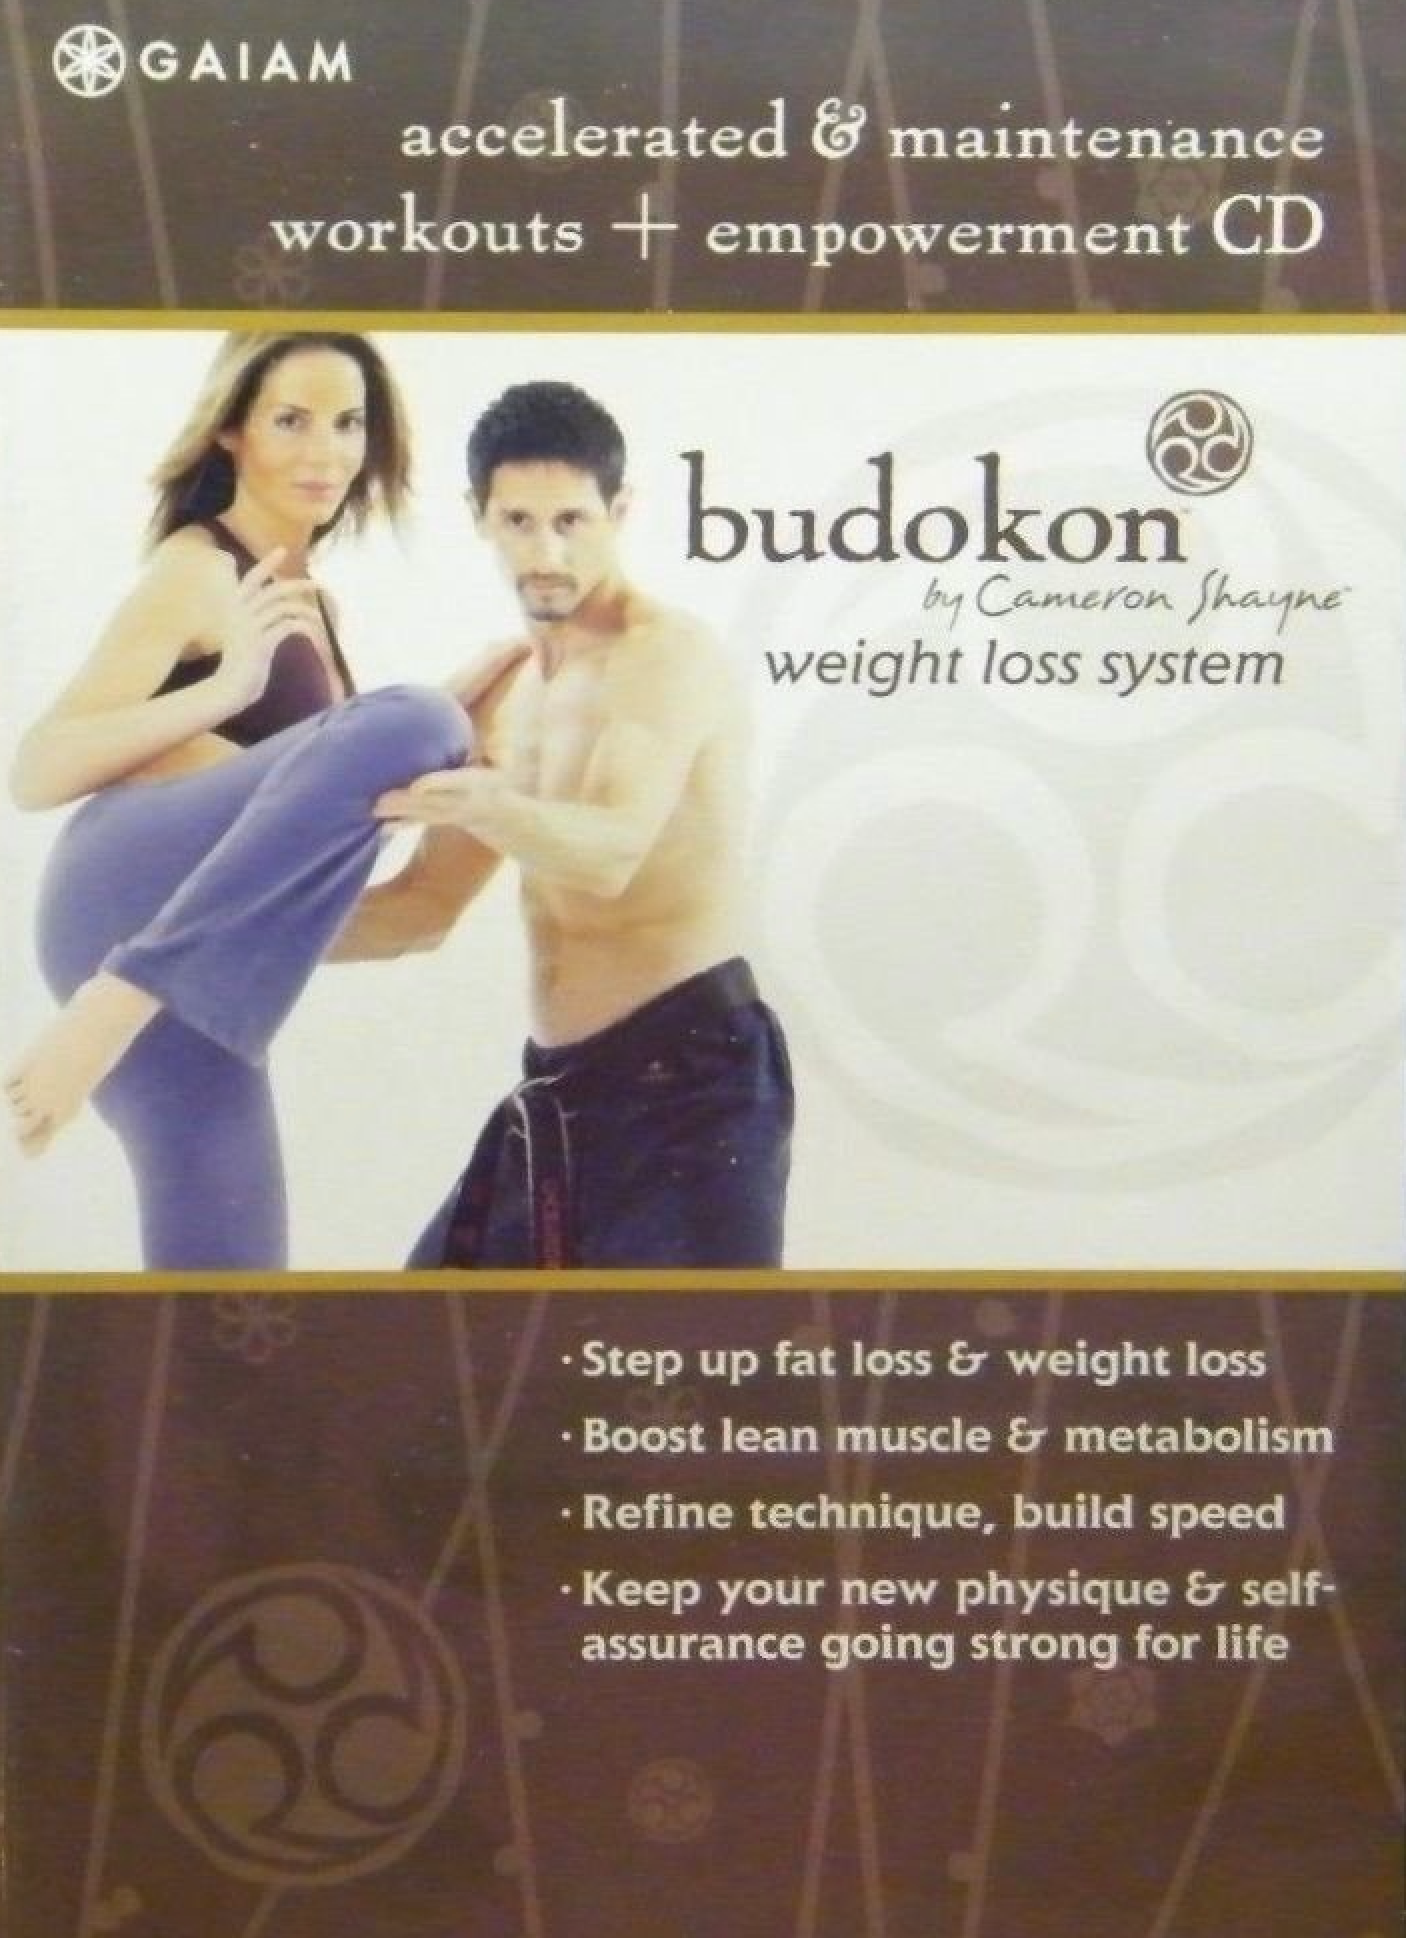 Sistema de pérdida de peso Budokon: entrenamientos acelerados y de mantenimiento + CD de empoderamiento de Cameron Shayne (usado) 